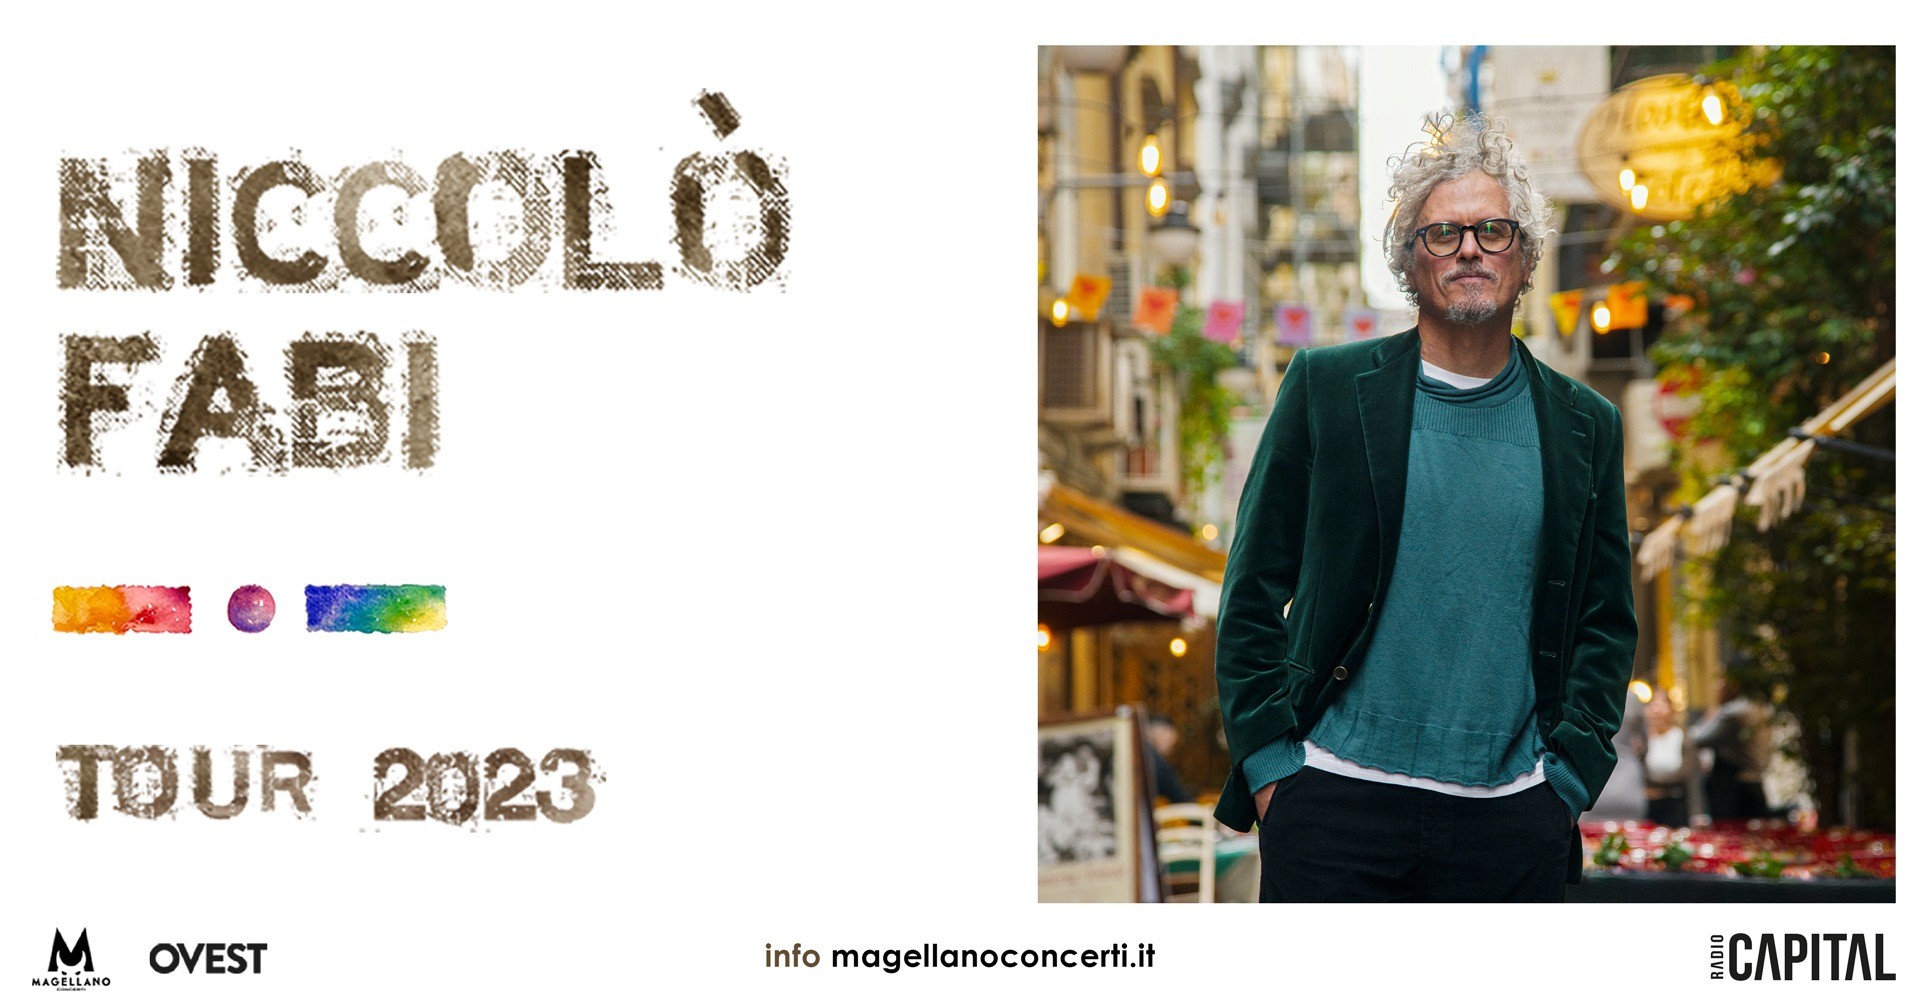 image NICCOLO' FABI - MENO PER MENO TOUR 2023